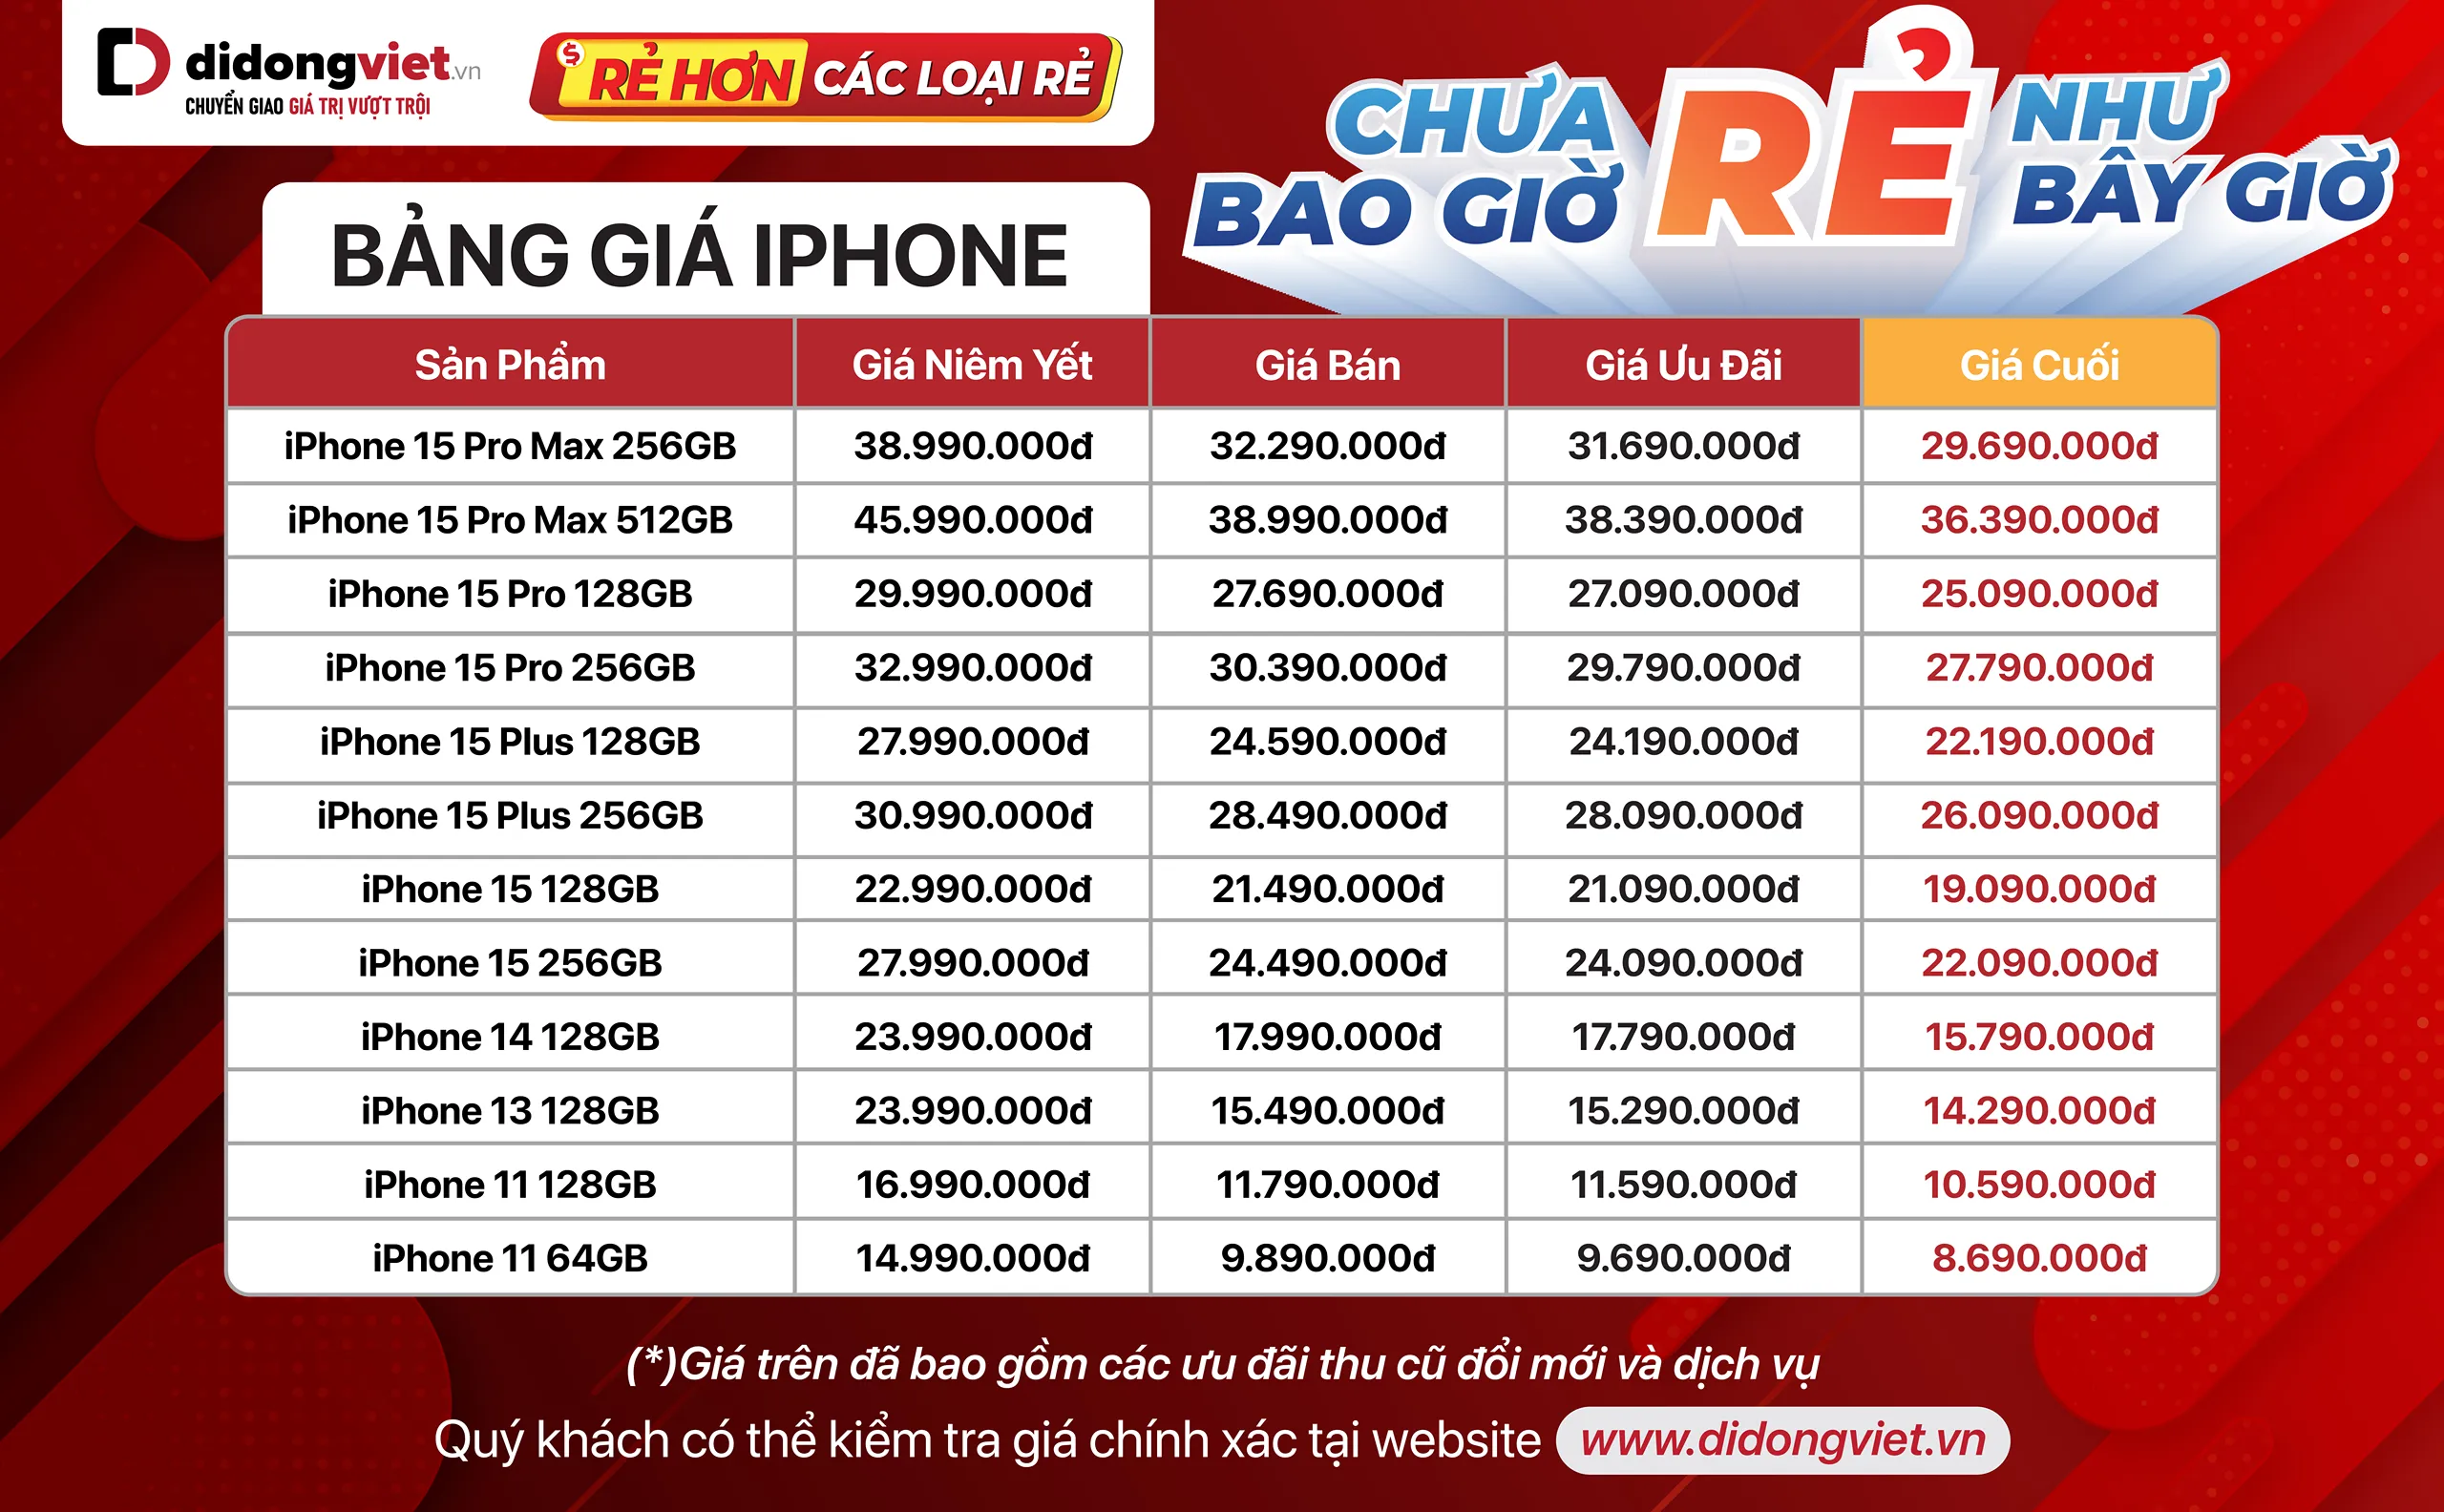 Di Động Việt tung chương trình mua trả góp iPhone không cần trả trước, không lãi suất, giá lại đang rẻ nhất từ trước đến nay